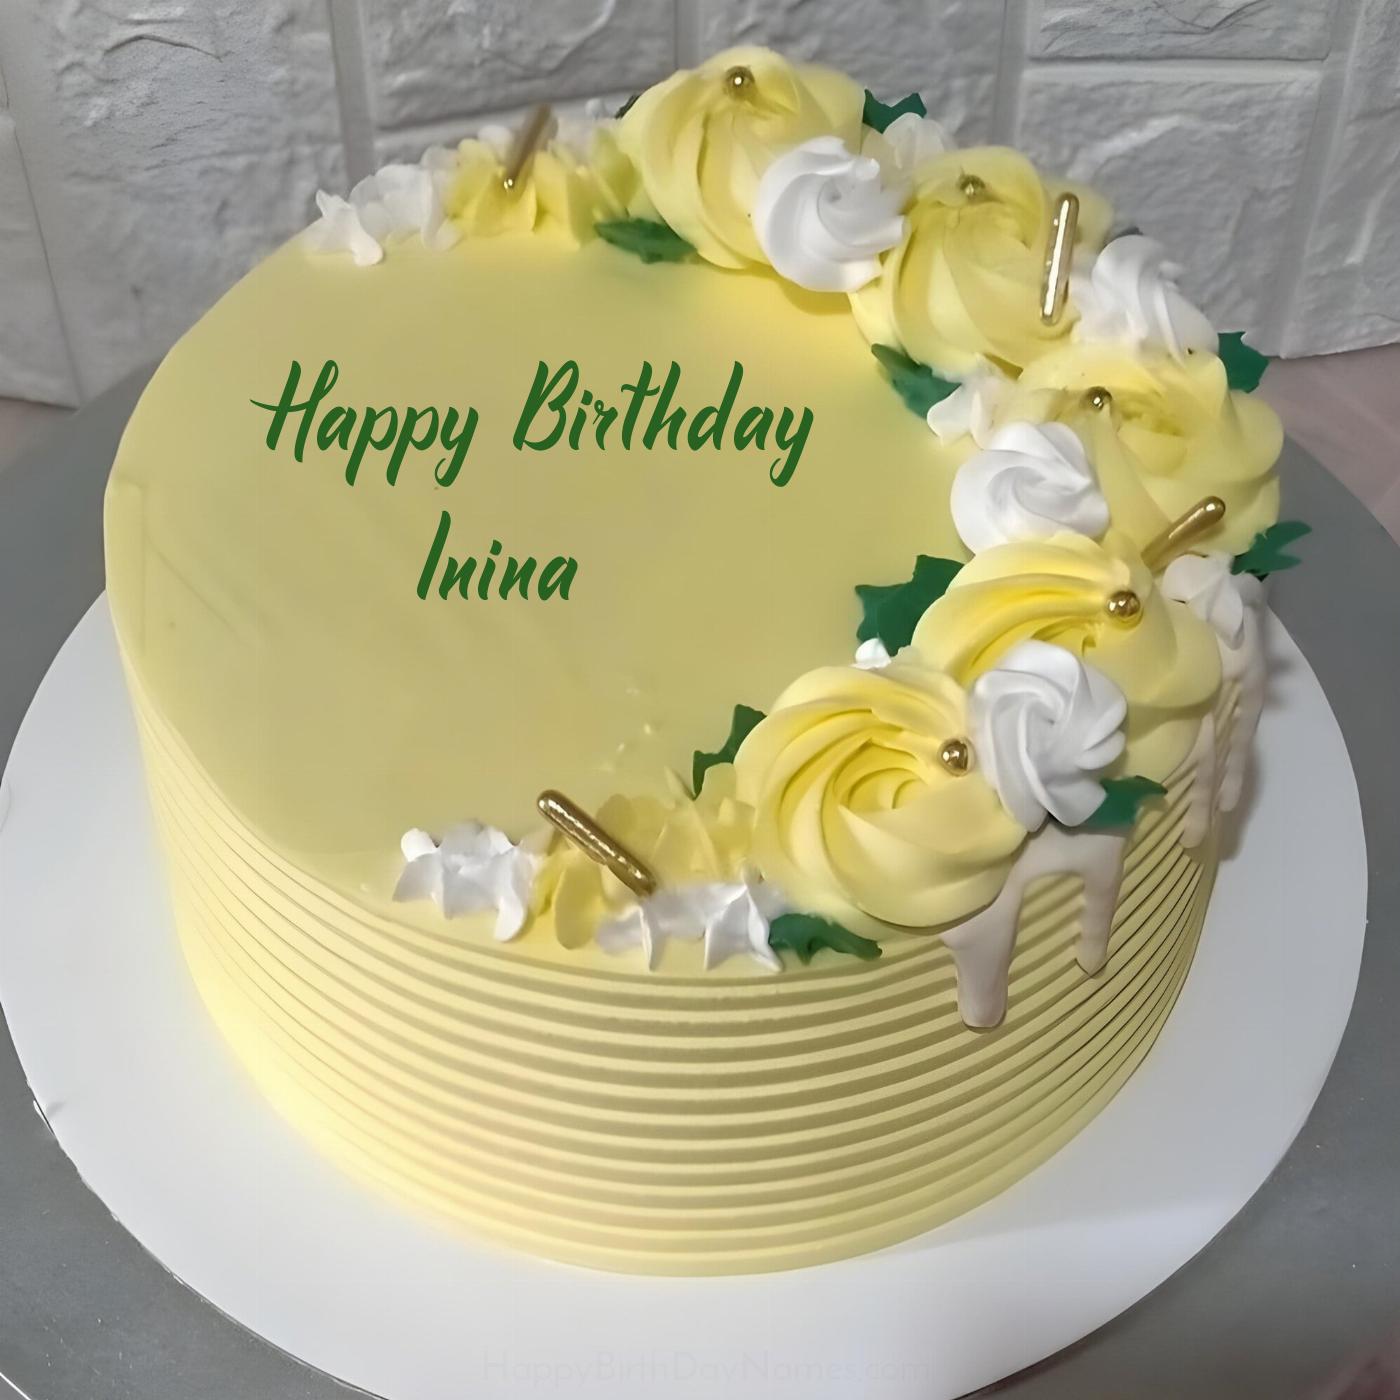 Happy Birthday Inina Yellow Flowers Cake